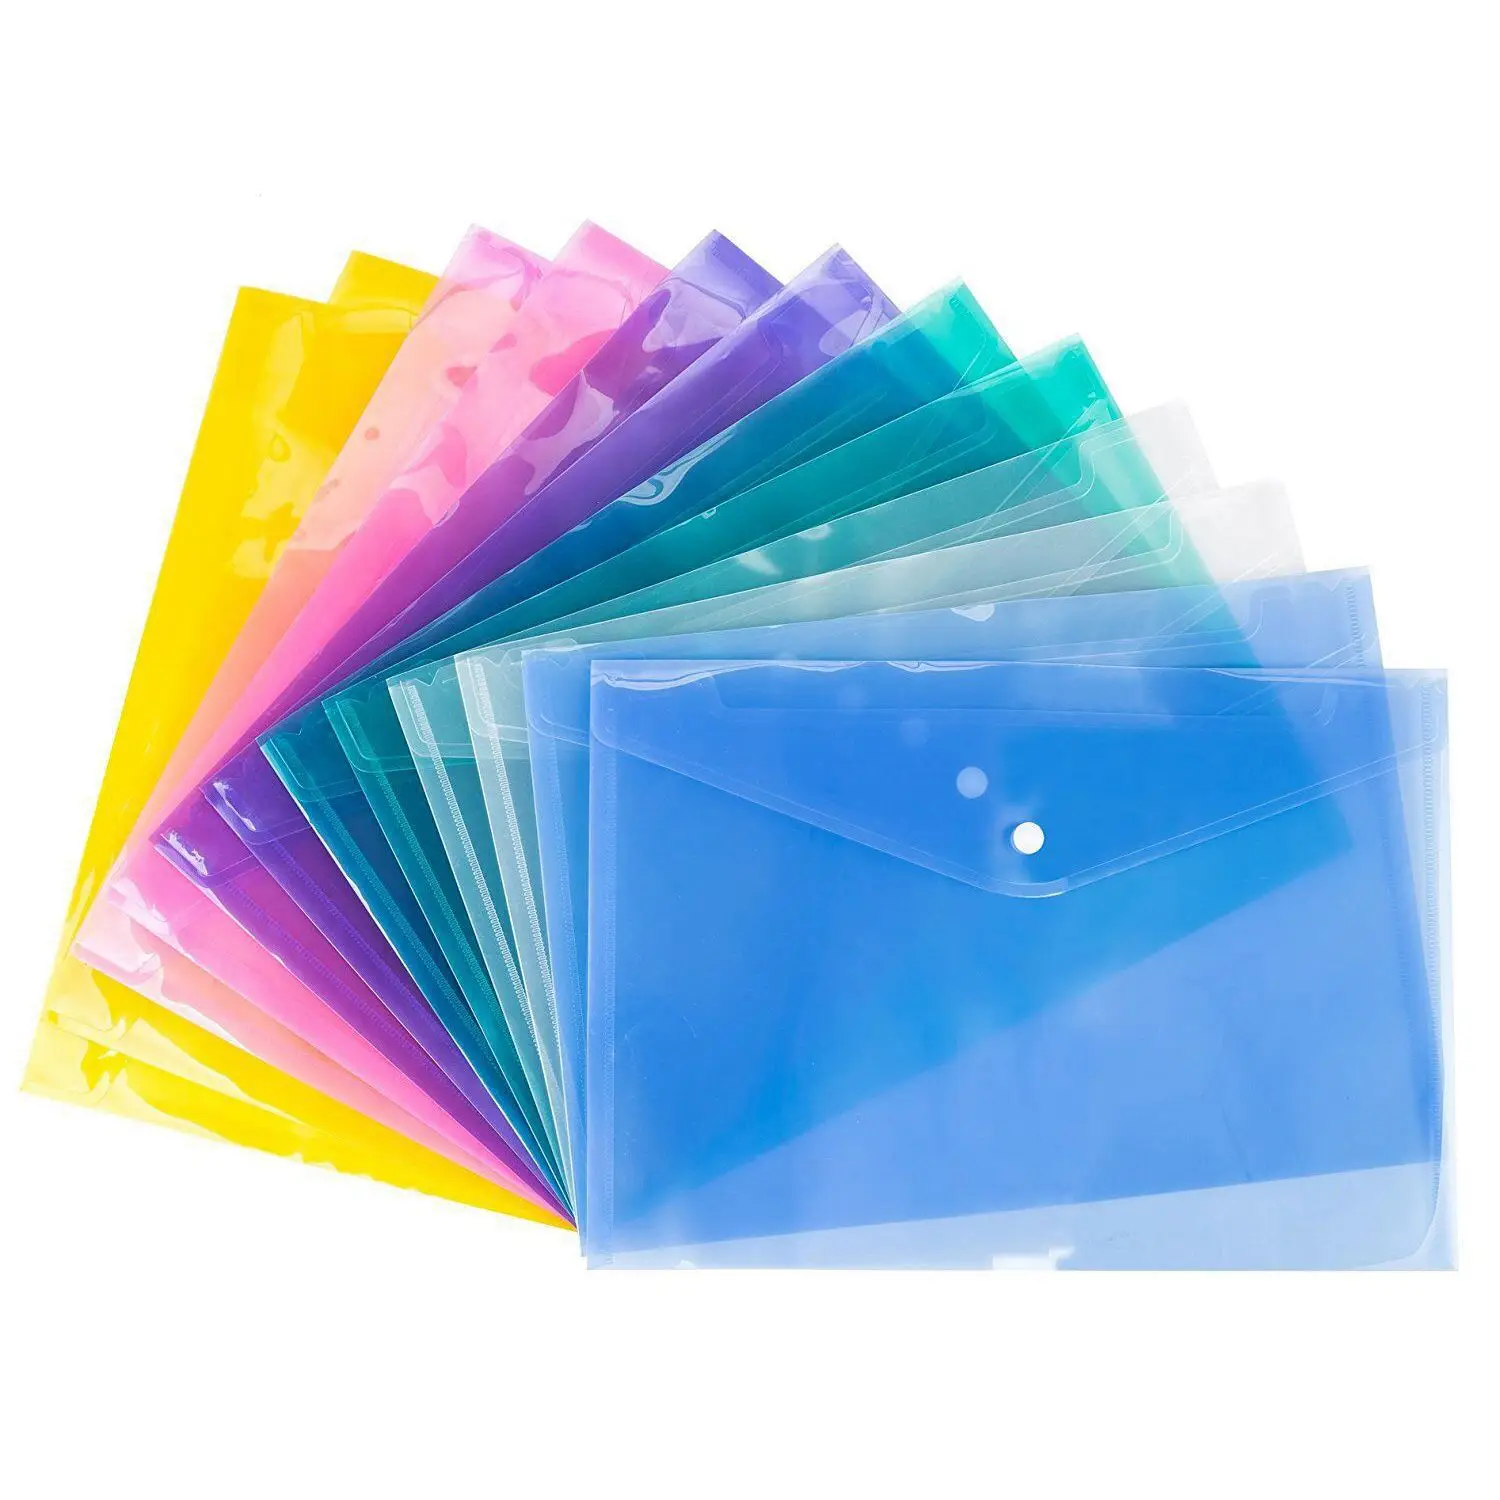 Новые бумажники для документов формата А4, пластиковые скоросшиватели, папки для хранения бумаги, разные цвета, 12 шт